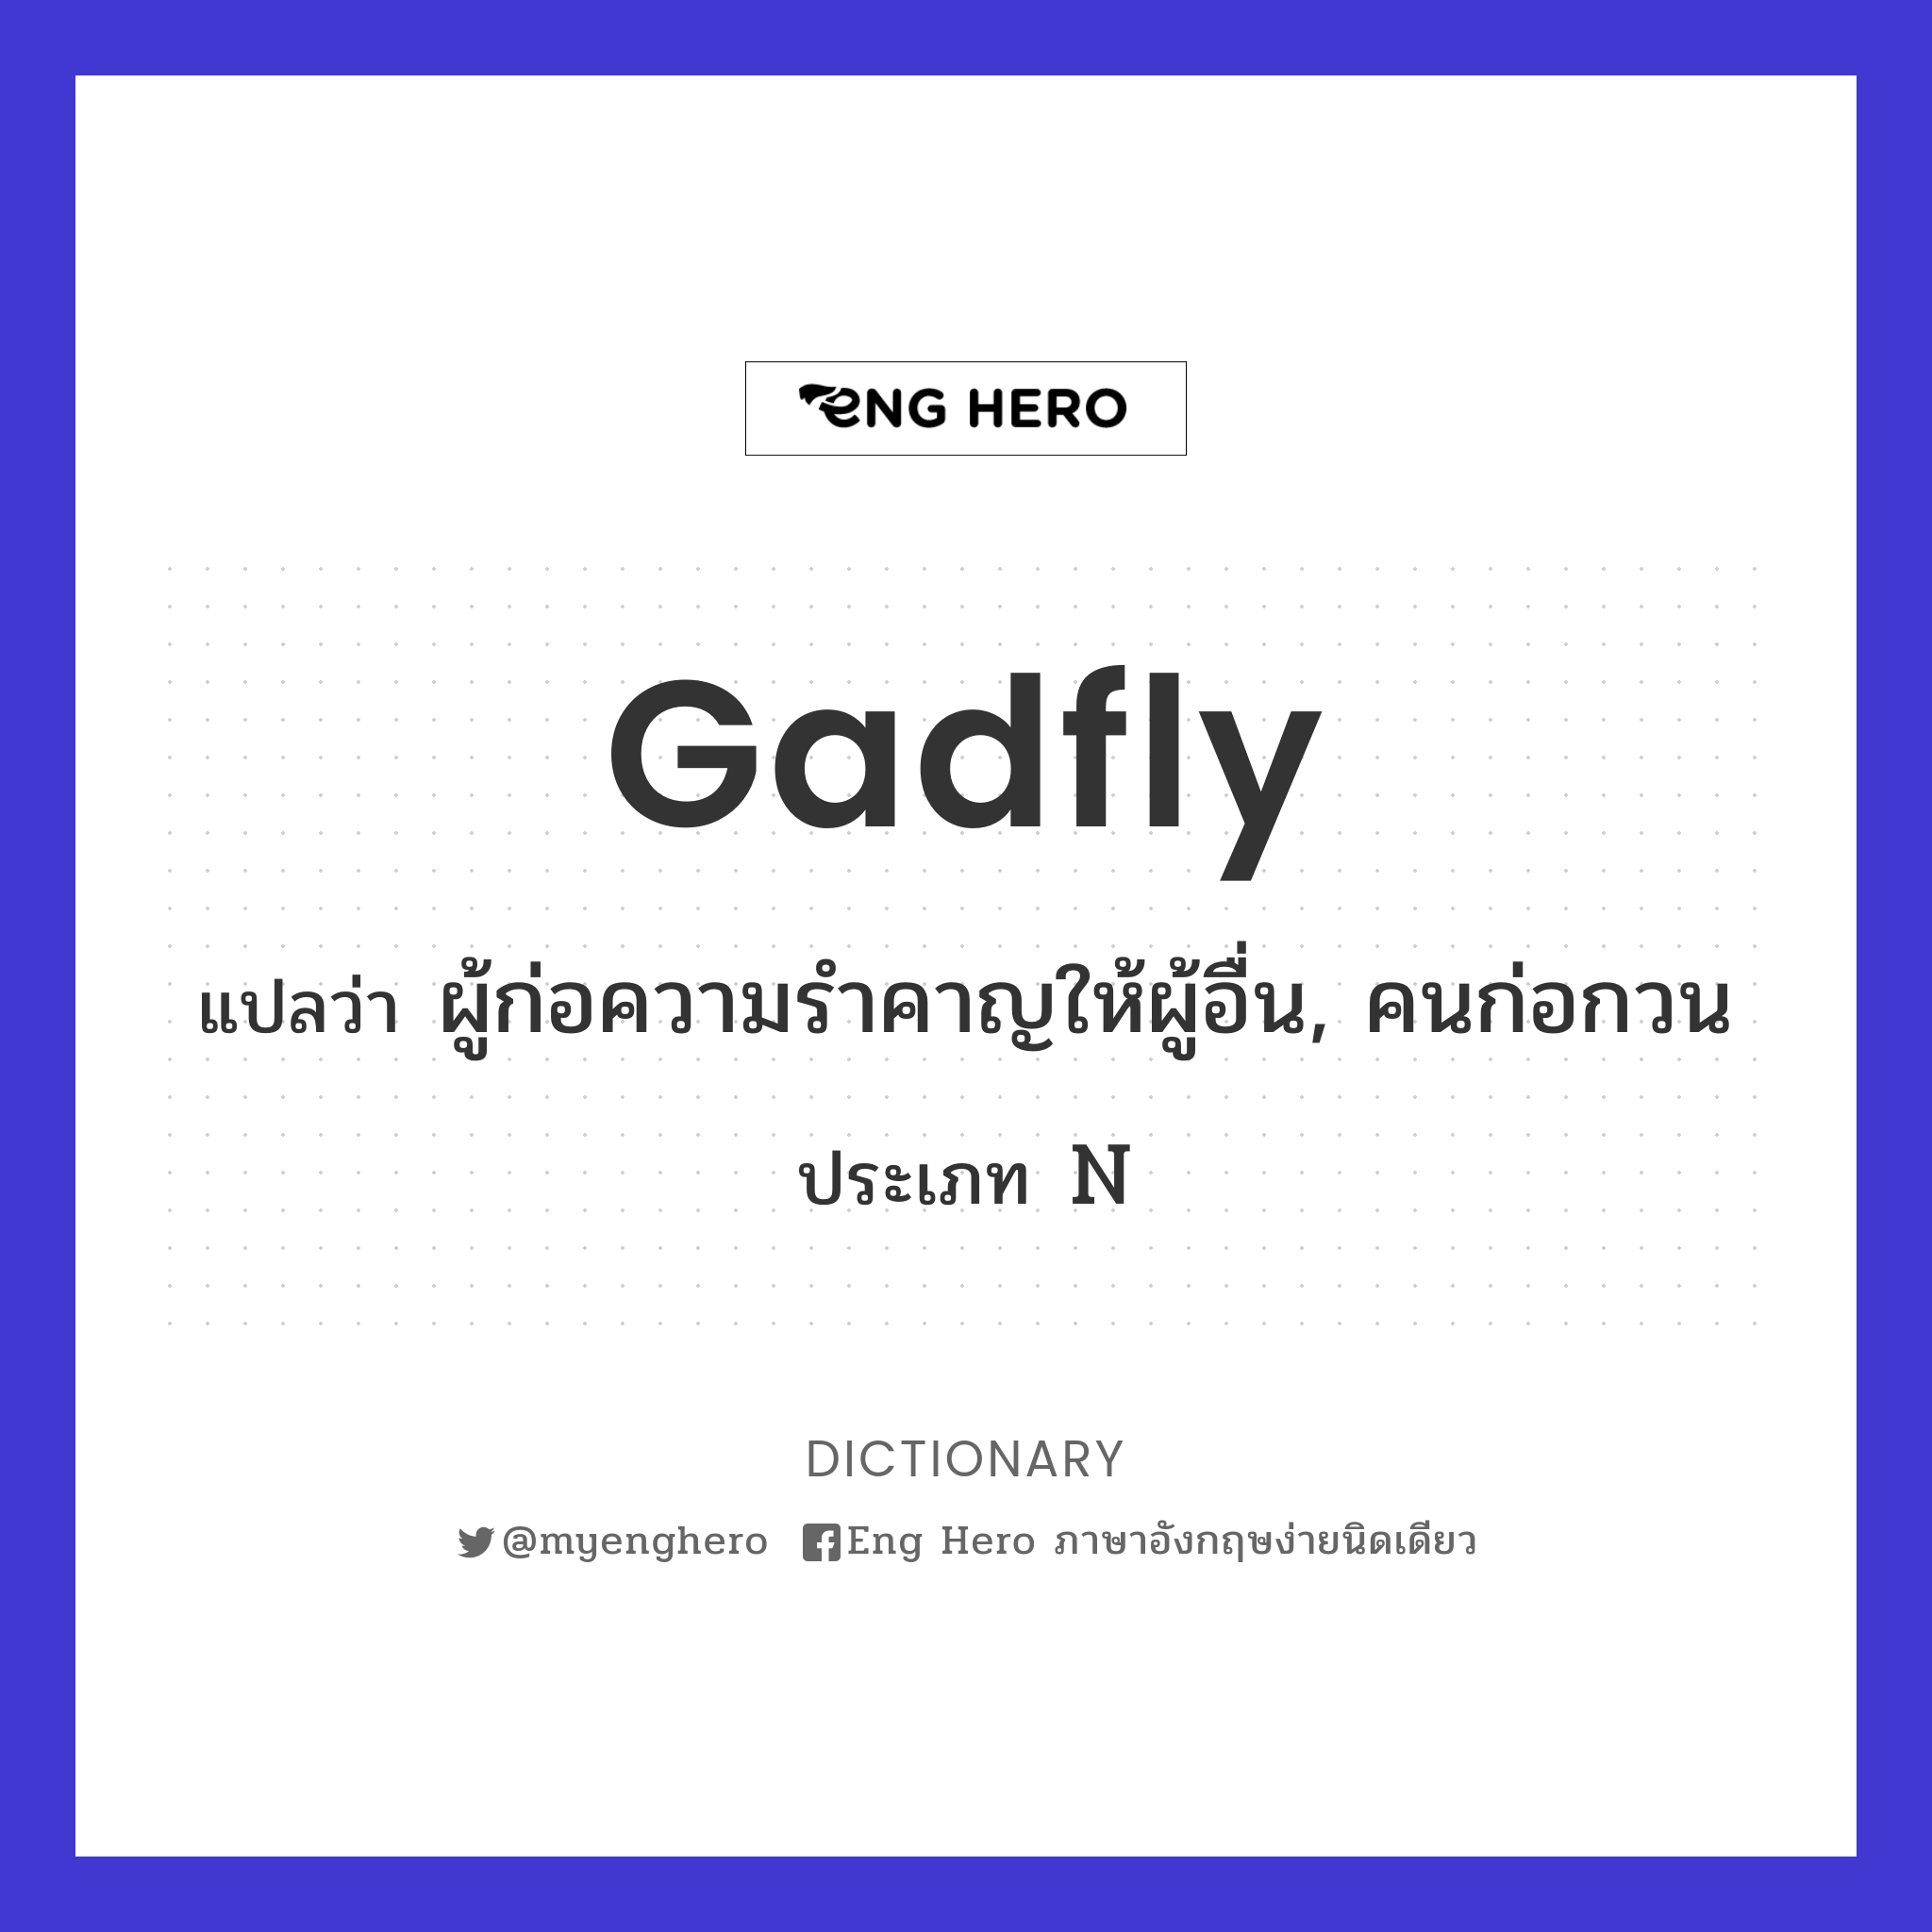 gadfly